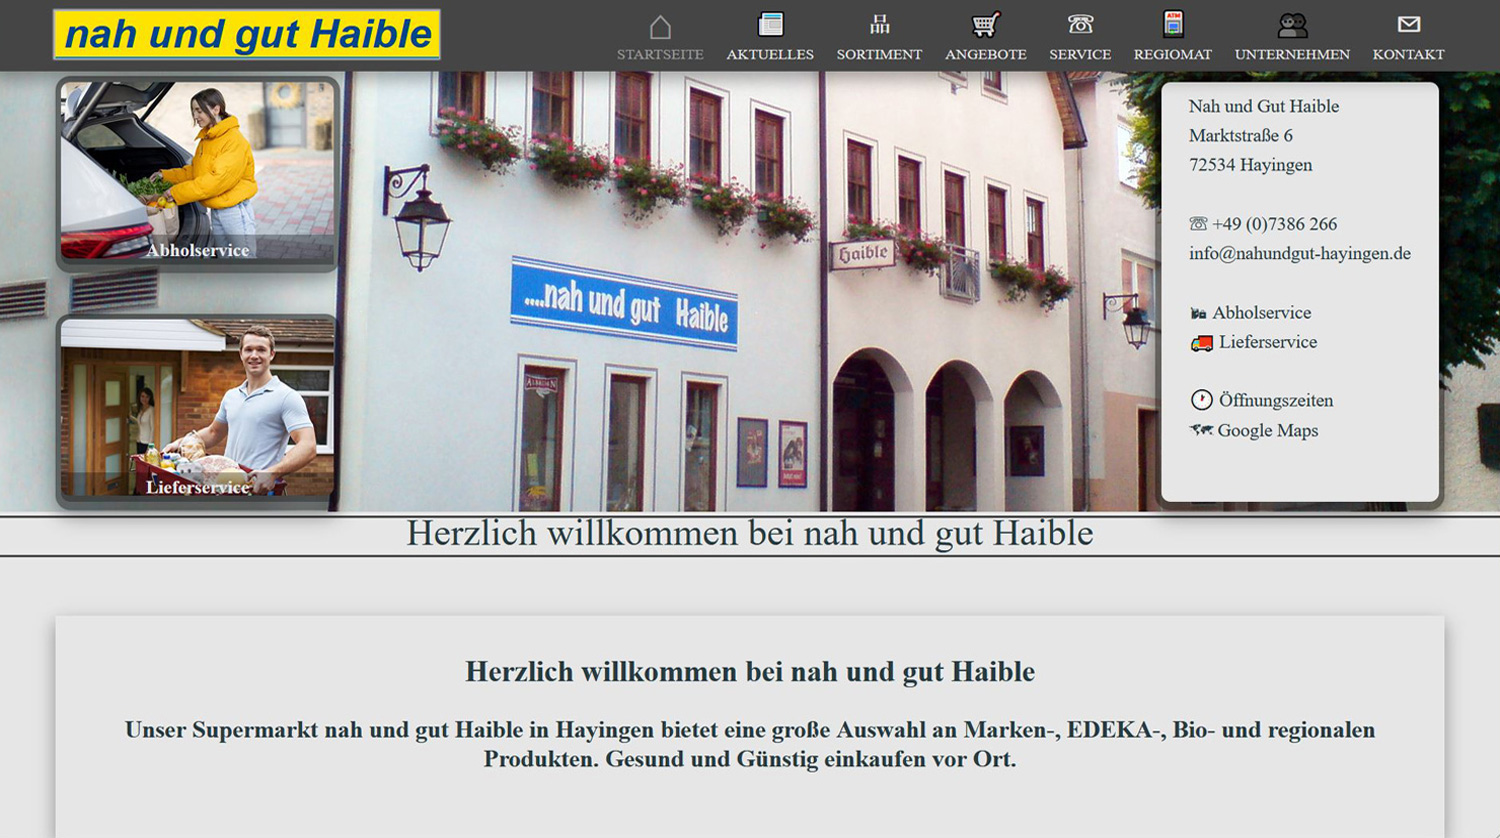 nah und gut Haible in Hayingen, Kreis Reutlingen, Einkaufsmarkt seit 1935